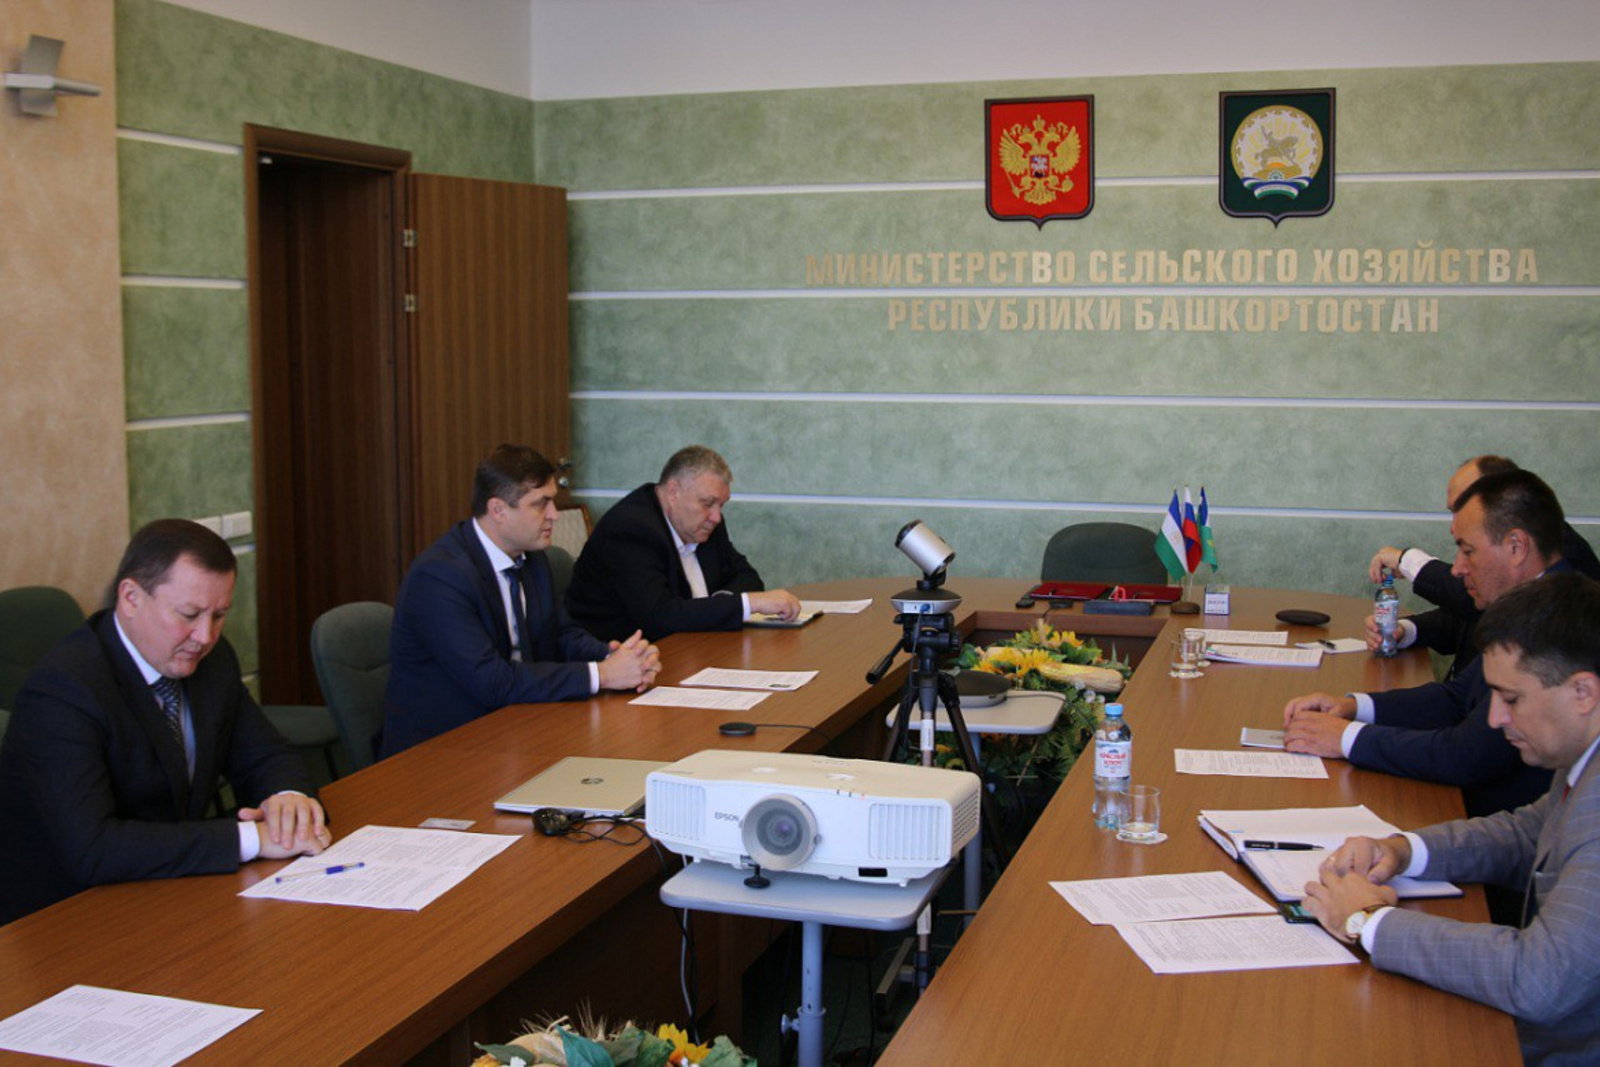 Министерство сельского хозяйства Республики Башкортостан и Минский тракторный завод договорились о масштабном сотрудничестве.